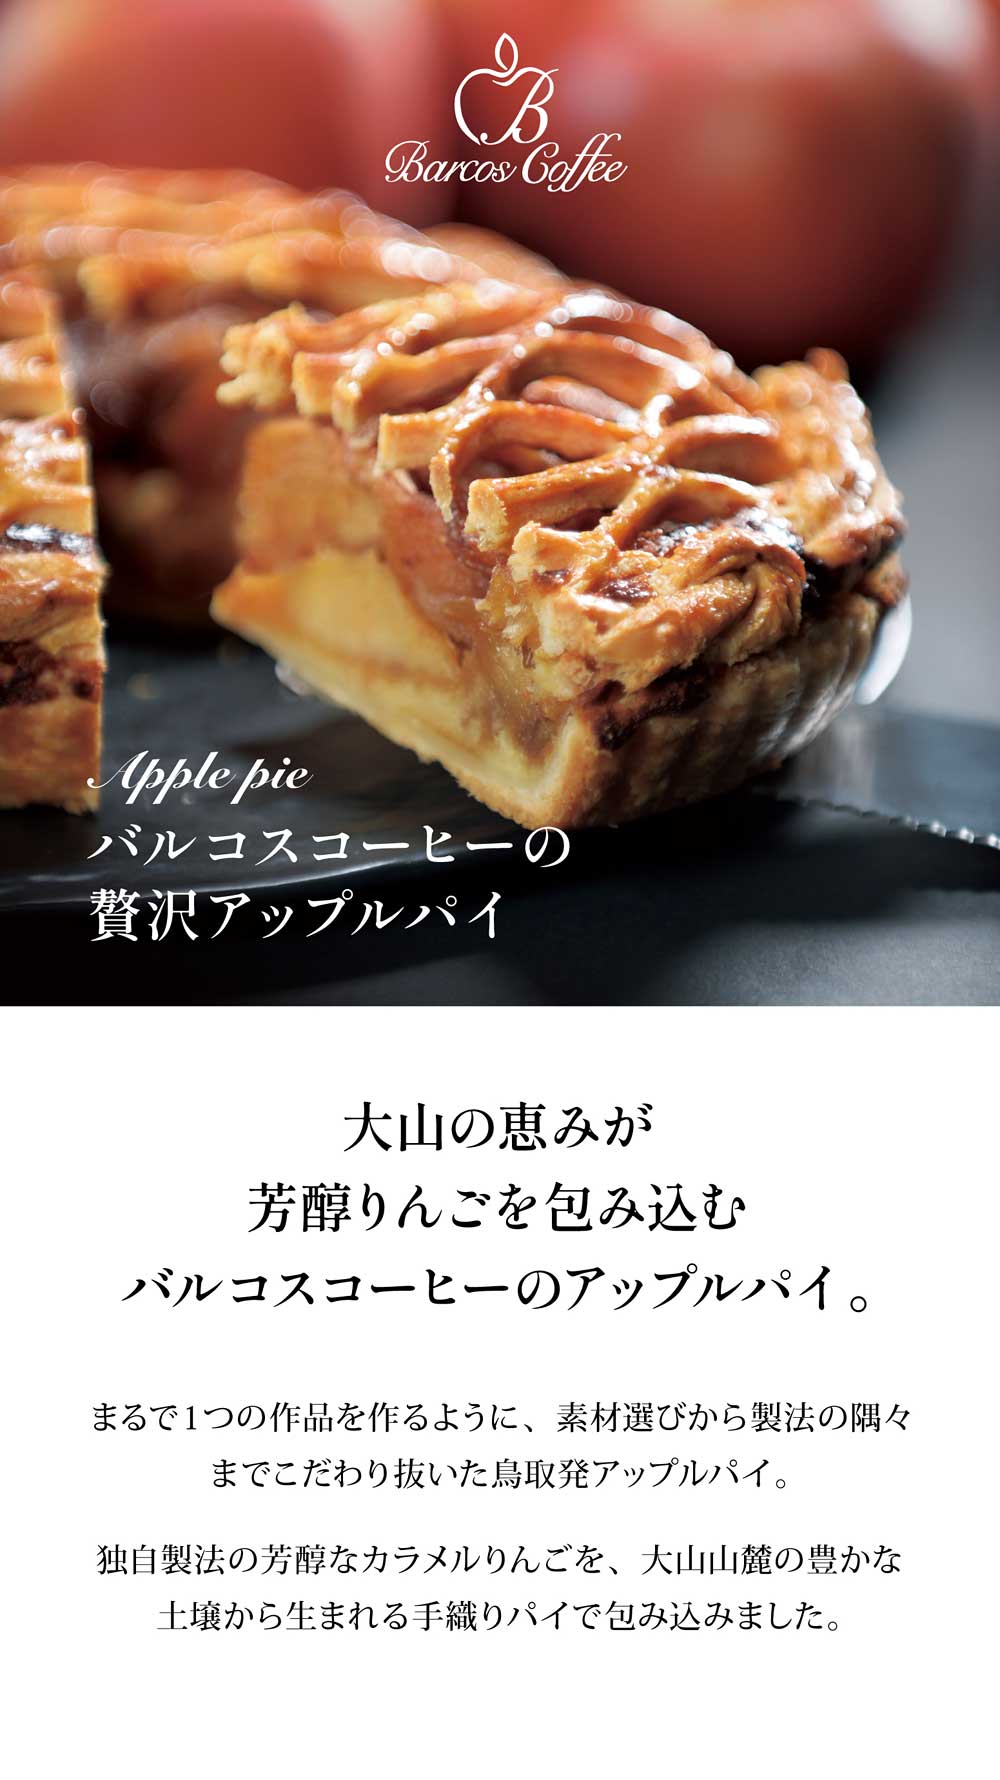 大山の恵みが芳醇りんごを包み込む、鳥取県発バルコスコーヒーのアップルパイ。大山山麓の豊かな土壌から生まれる手織りパイで包み込みました。